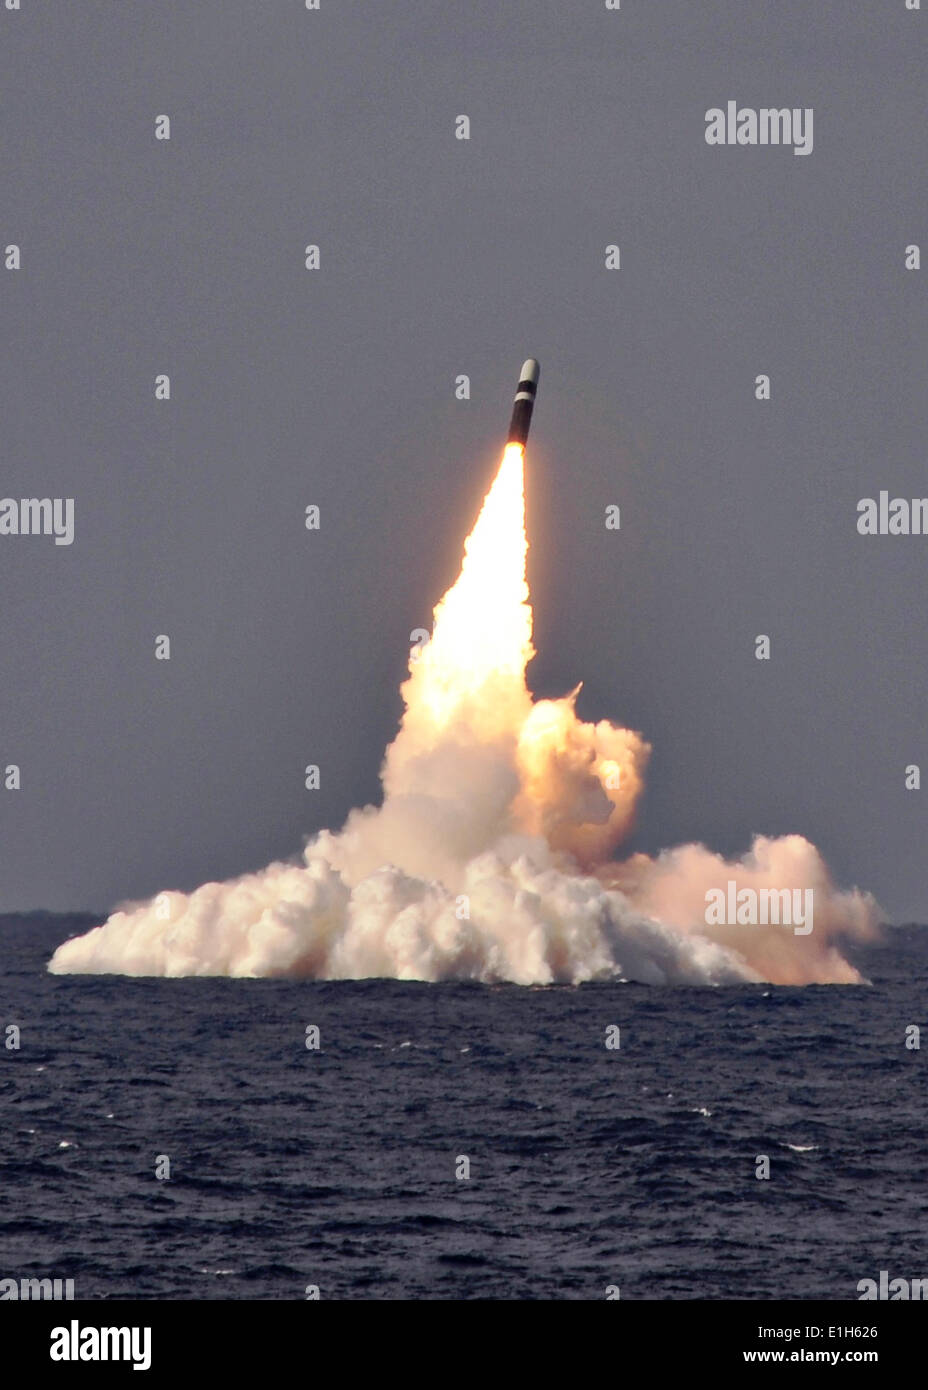 Ein US-Marine Trident II D-5 ballistische Flugkörper ist Ozean von ballistischen Raketen Ohio-Klasse-u-Boot USS West Virginia während ein Raketentest 2. Juni 2014 in den Atlantik Missile Range gestartet. Stockfoto